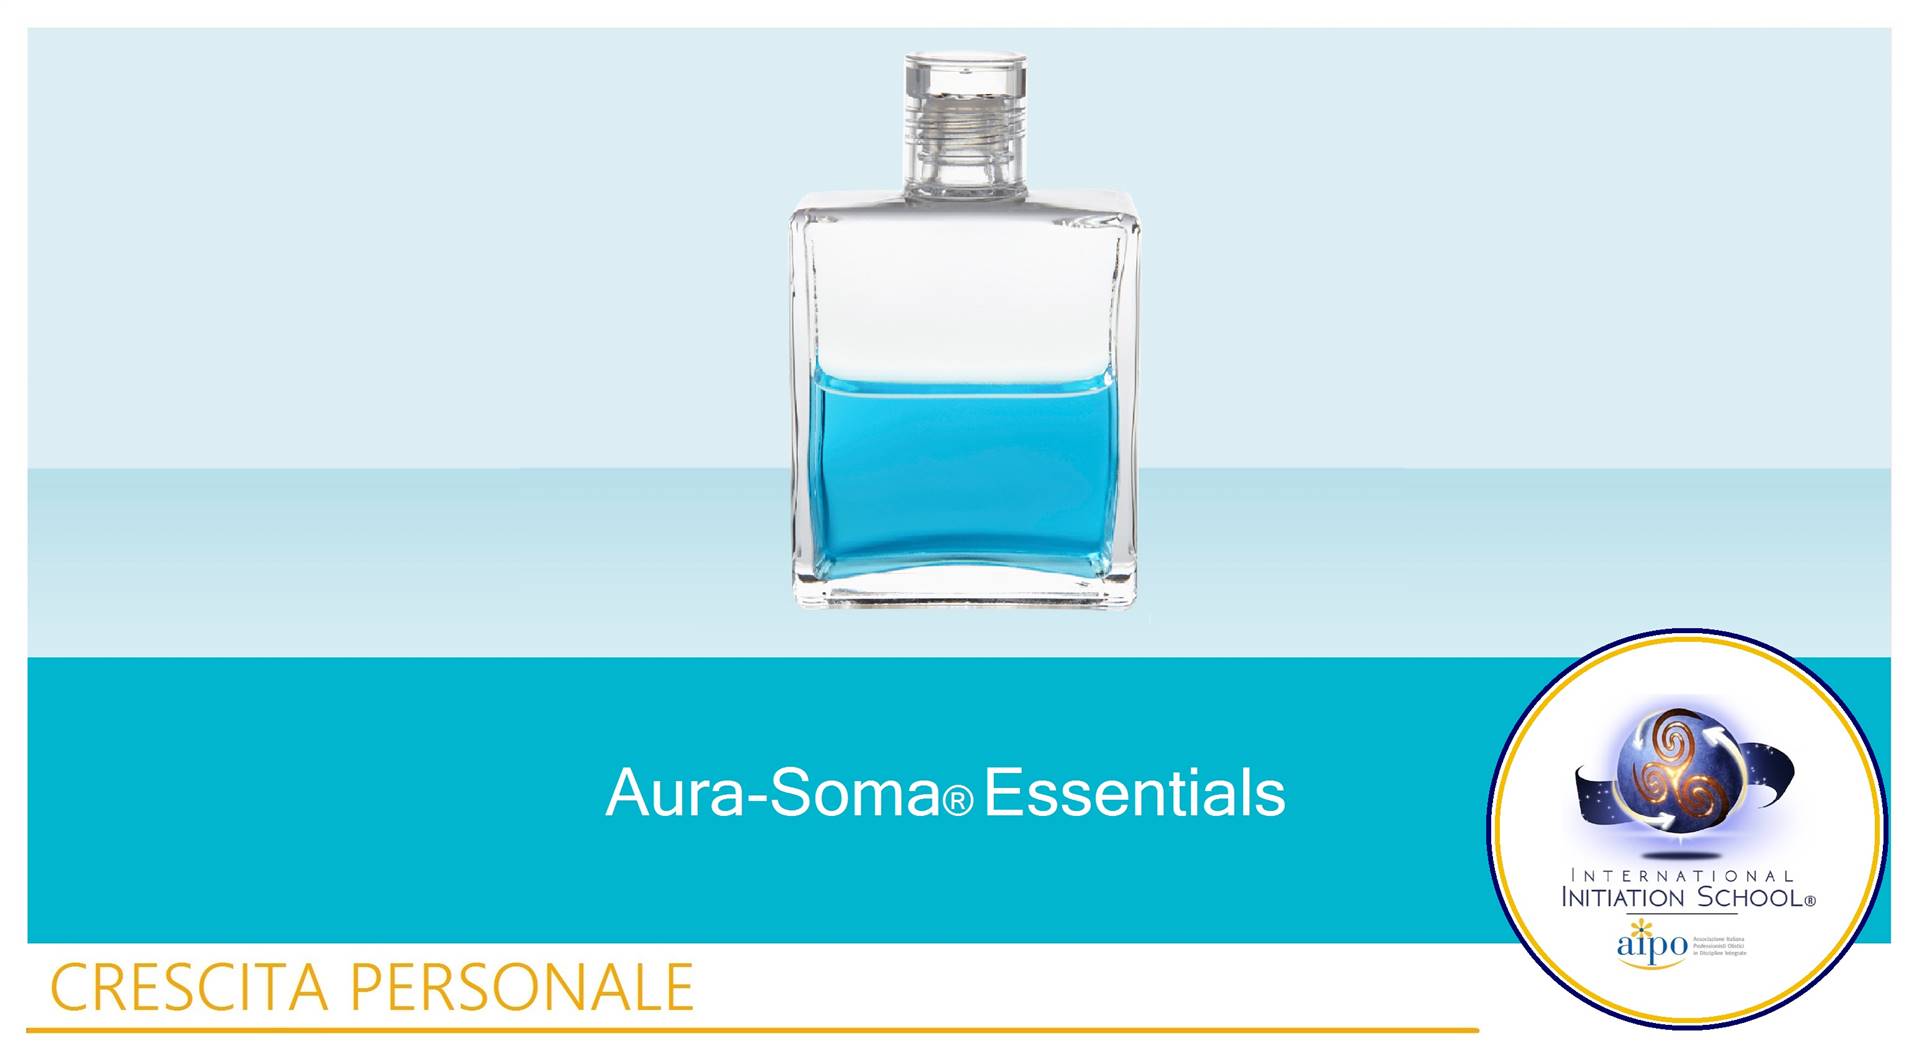 Aura-Soma® Essentials